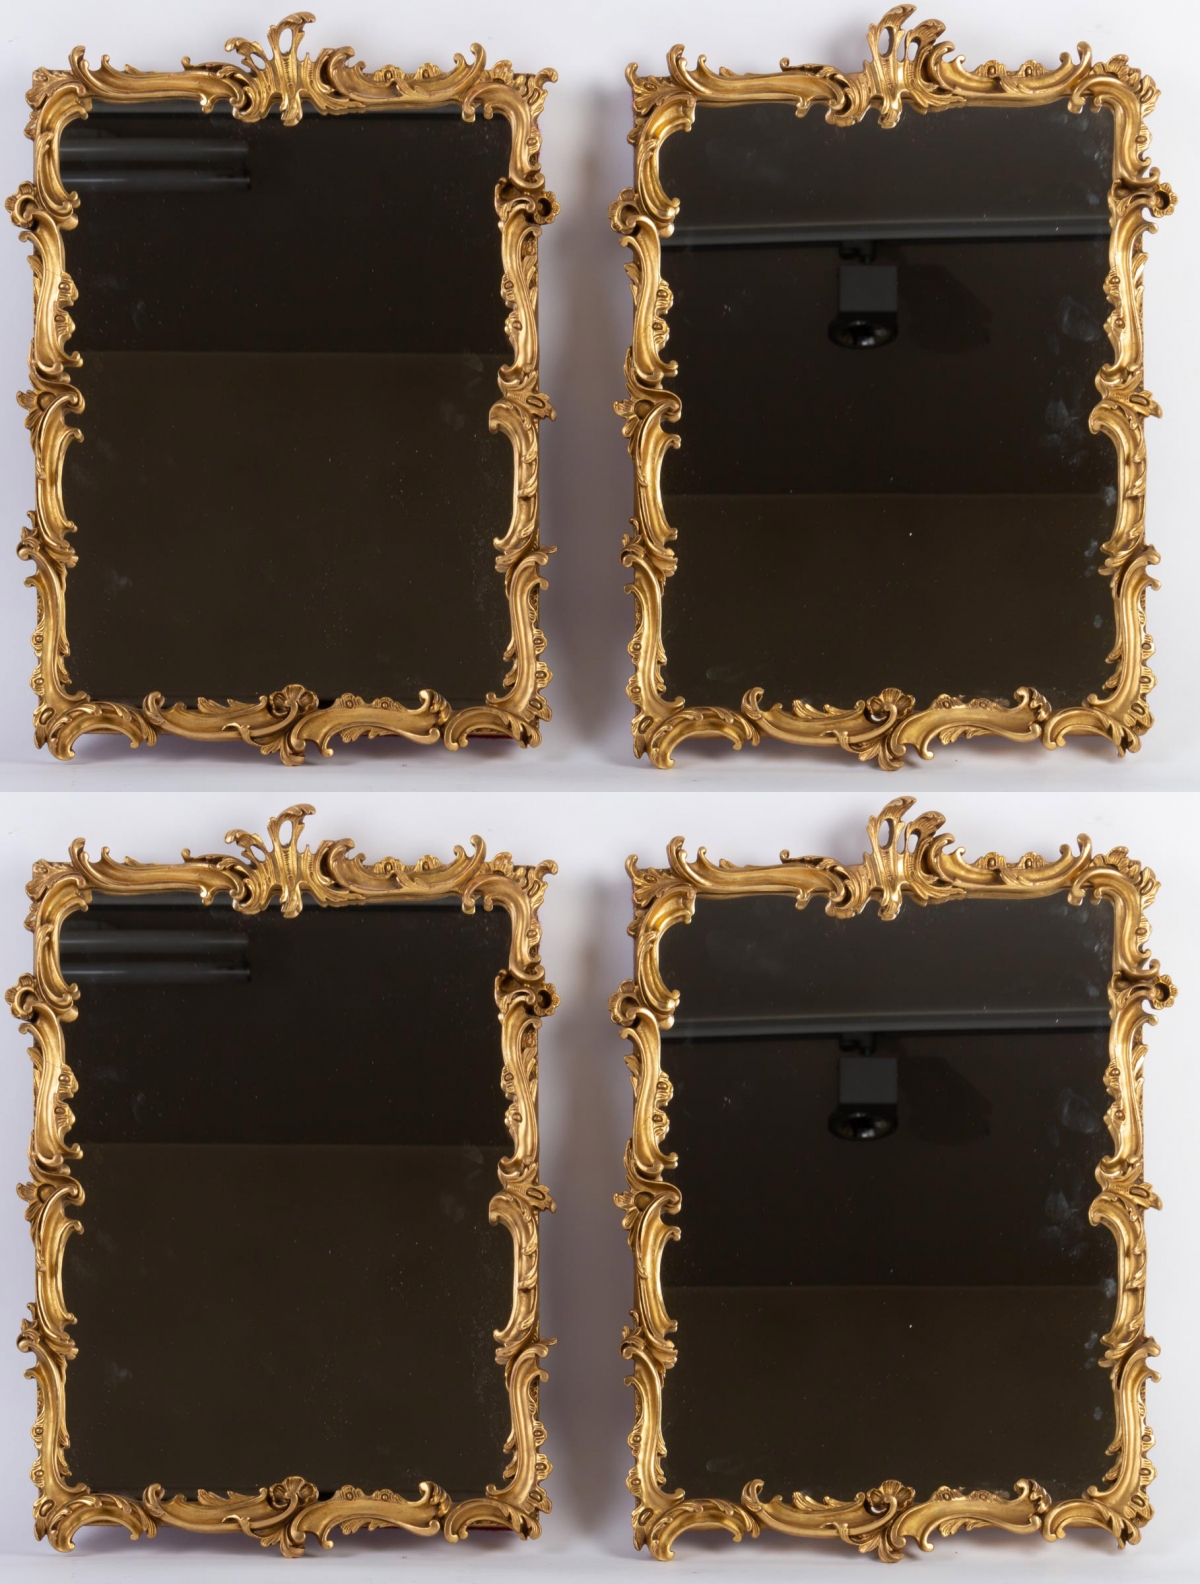 Suite de 4 miroirs 19e siècle||||||||||